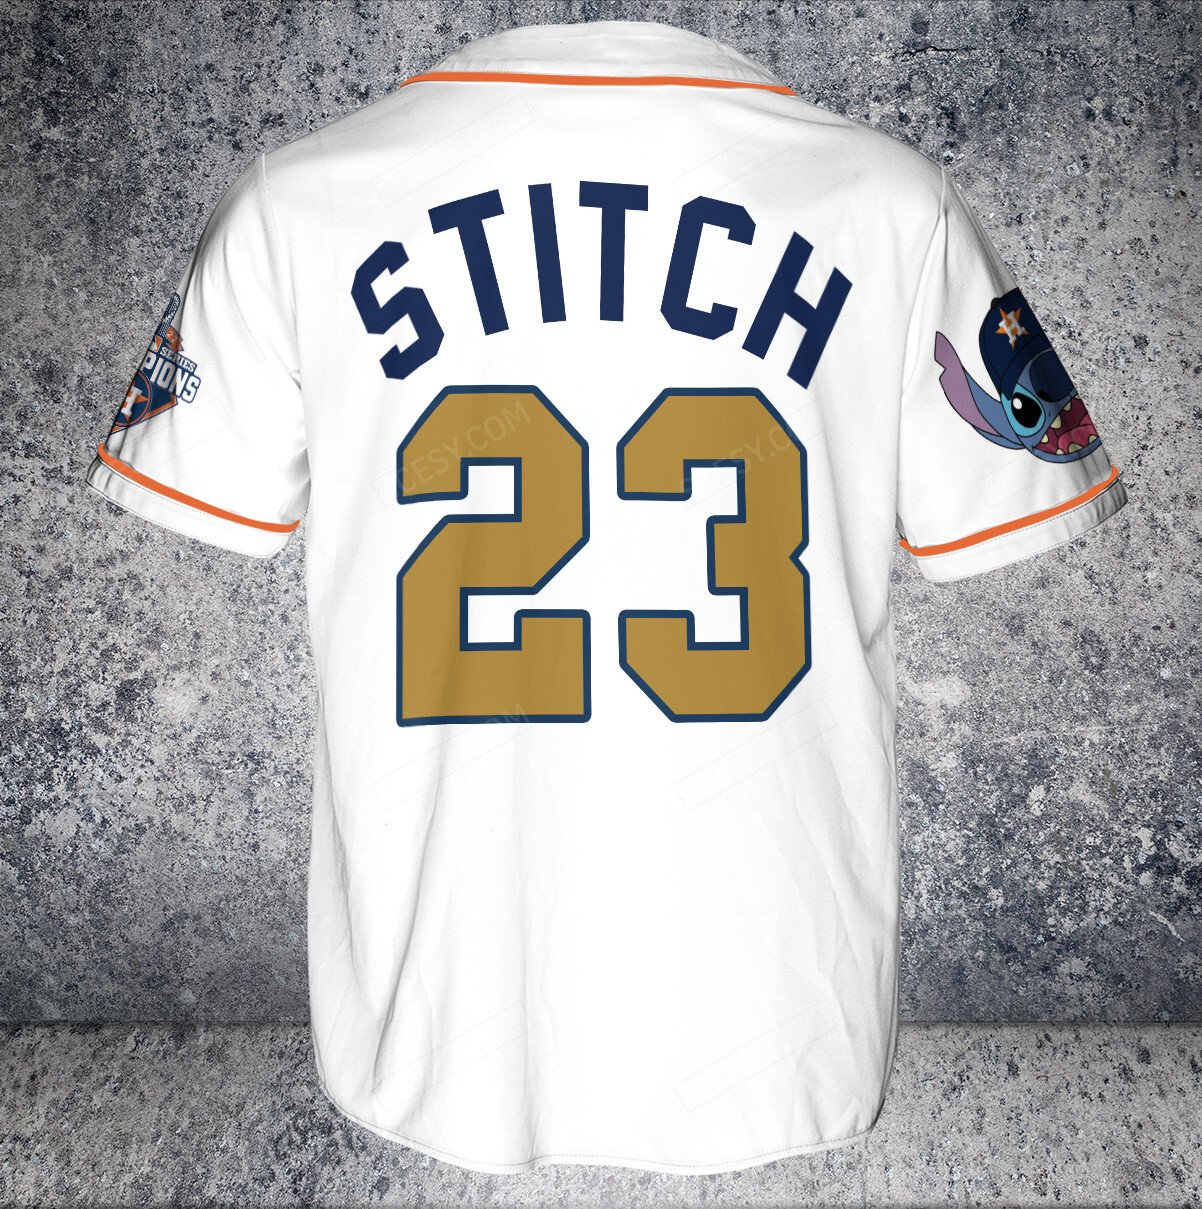 Stitch Chicago White Sox Baseball Jersey -  Worldwide Shipping